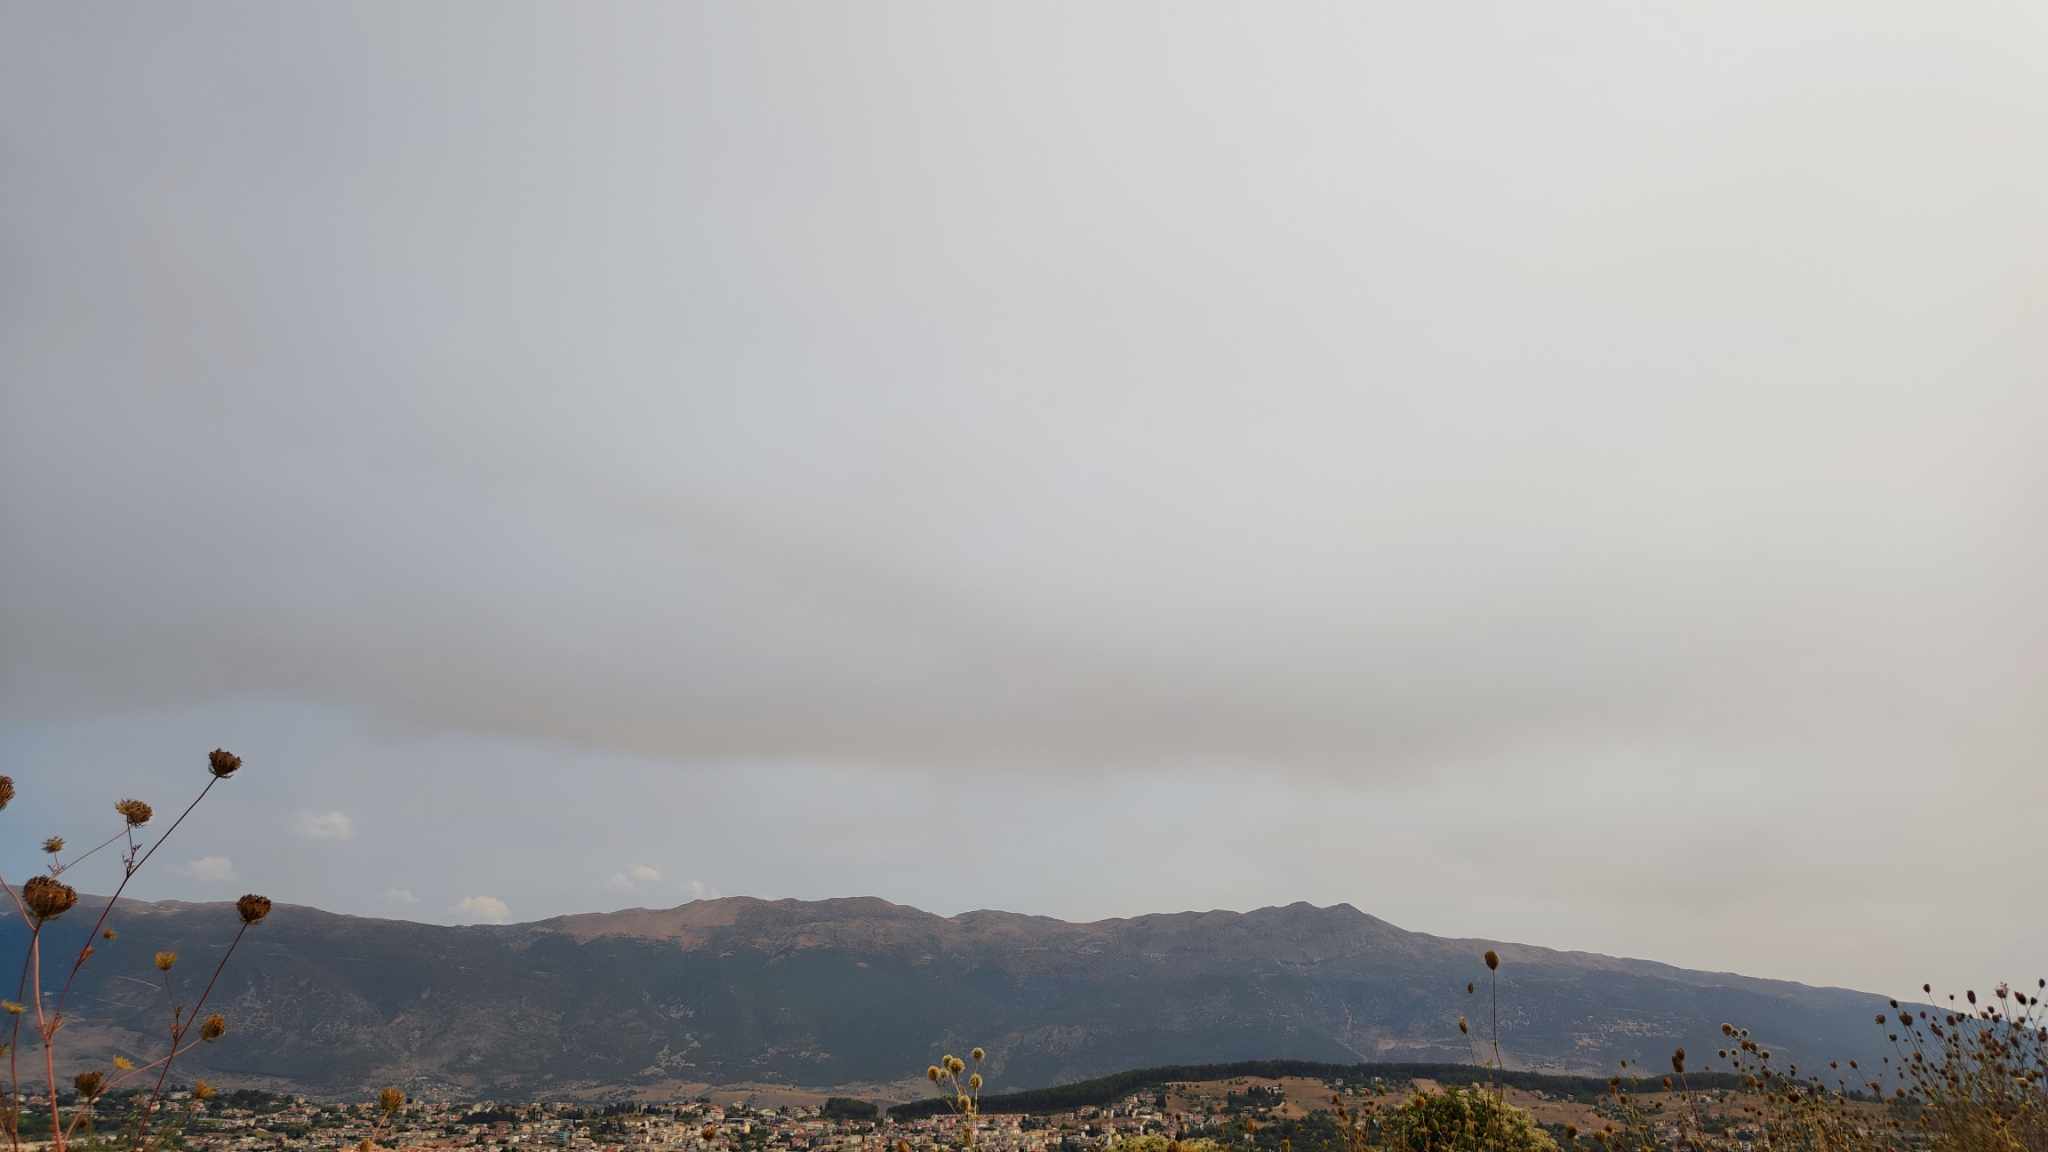 Ιωάννινα: Πυκνοί καπνοί από την πυρκαγιά της Αλεξανδρούπολης έχουν καλύψει την Ήπειρο – Δείτε εικόνες